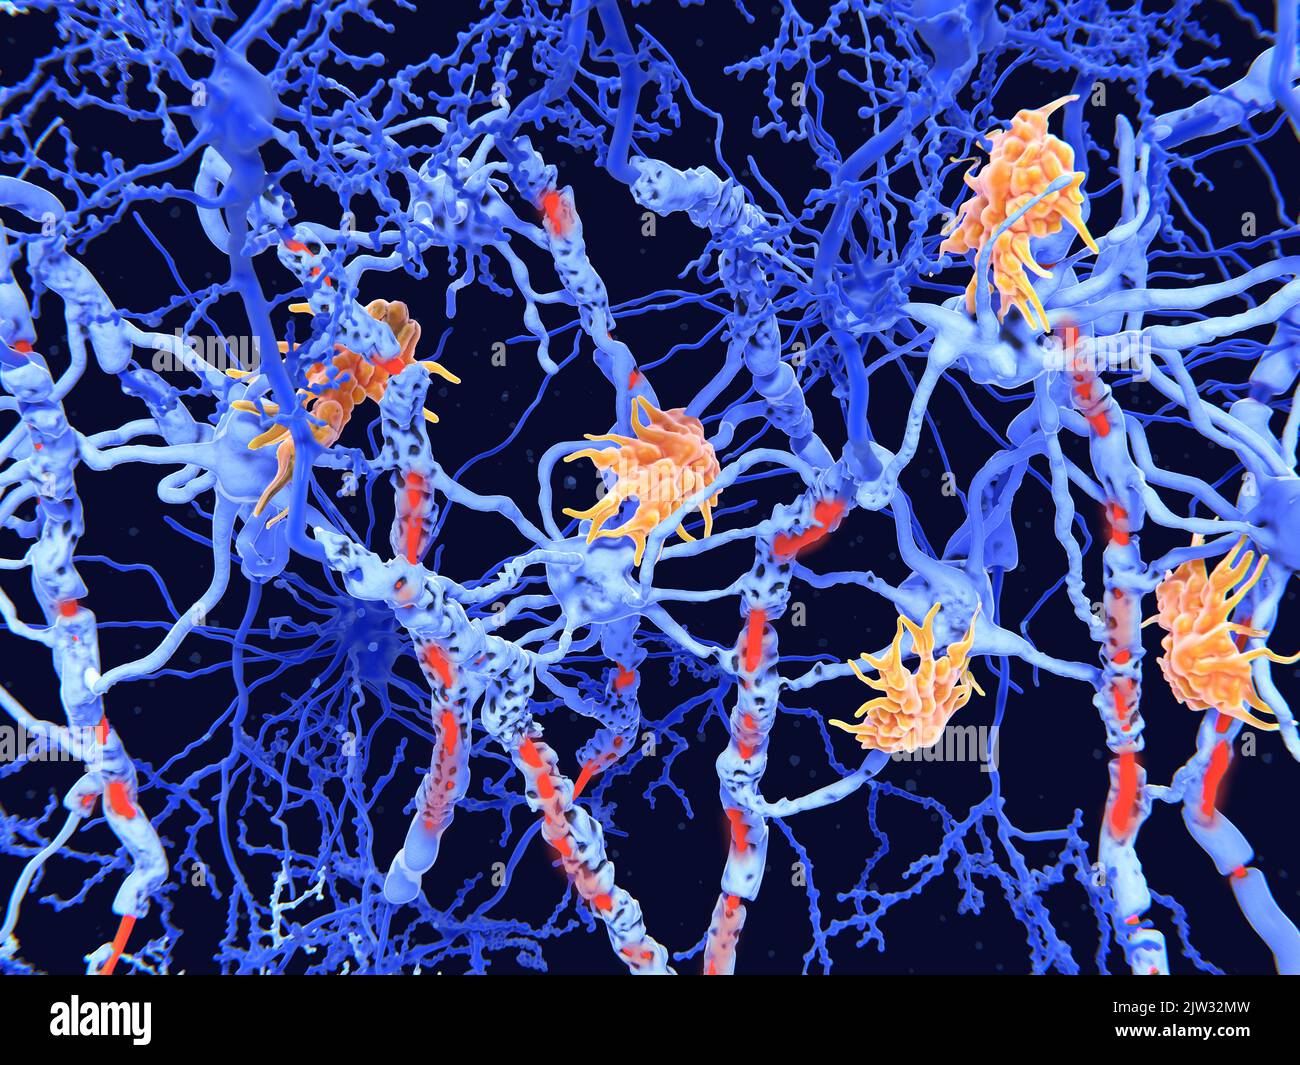 Illustration von beschädigten Nervenzellen, die durch die degenerative Erkrankung Multiple Sklerose verursacht werden. Zellen des Immunsystems (Mikroglia, Orange) haben die Nervenzellhüllen (Myelin) angegriffen, was zu einer geschädigten Myelin (rot) und gestörter Signalfunktion zwischen den Nervenzellen (Neuronen, blau) führte. Multiple Sklerose ist eine fortschreitende Erkrankung, die Kribbeln, Sprachstörungen, Koordinationsstörungen, Lähmungen und Tod verursachen kann. Die Mikroglia-Zellen greifen die Oligodendrozyten an, die die isolierende Myelinhülle um Neuronaxonen bilden, was zur Zerstörung der Myelinhülle führt. Stockfoto